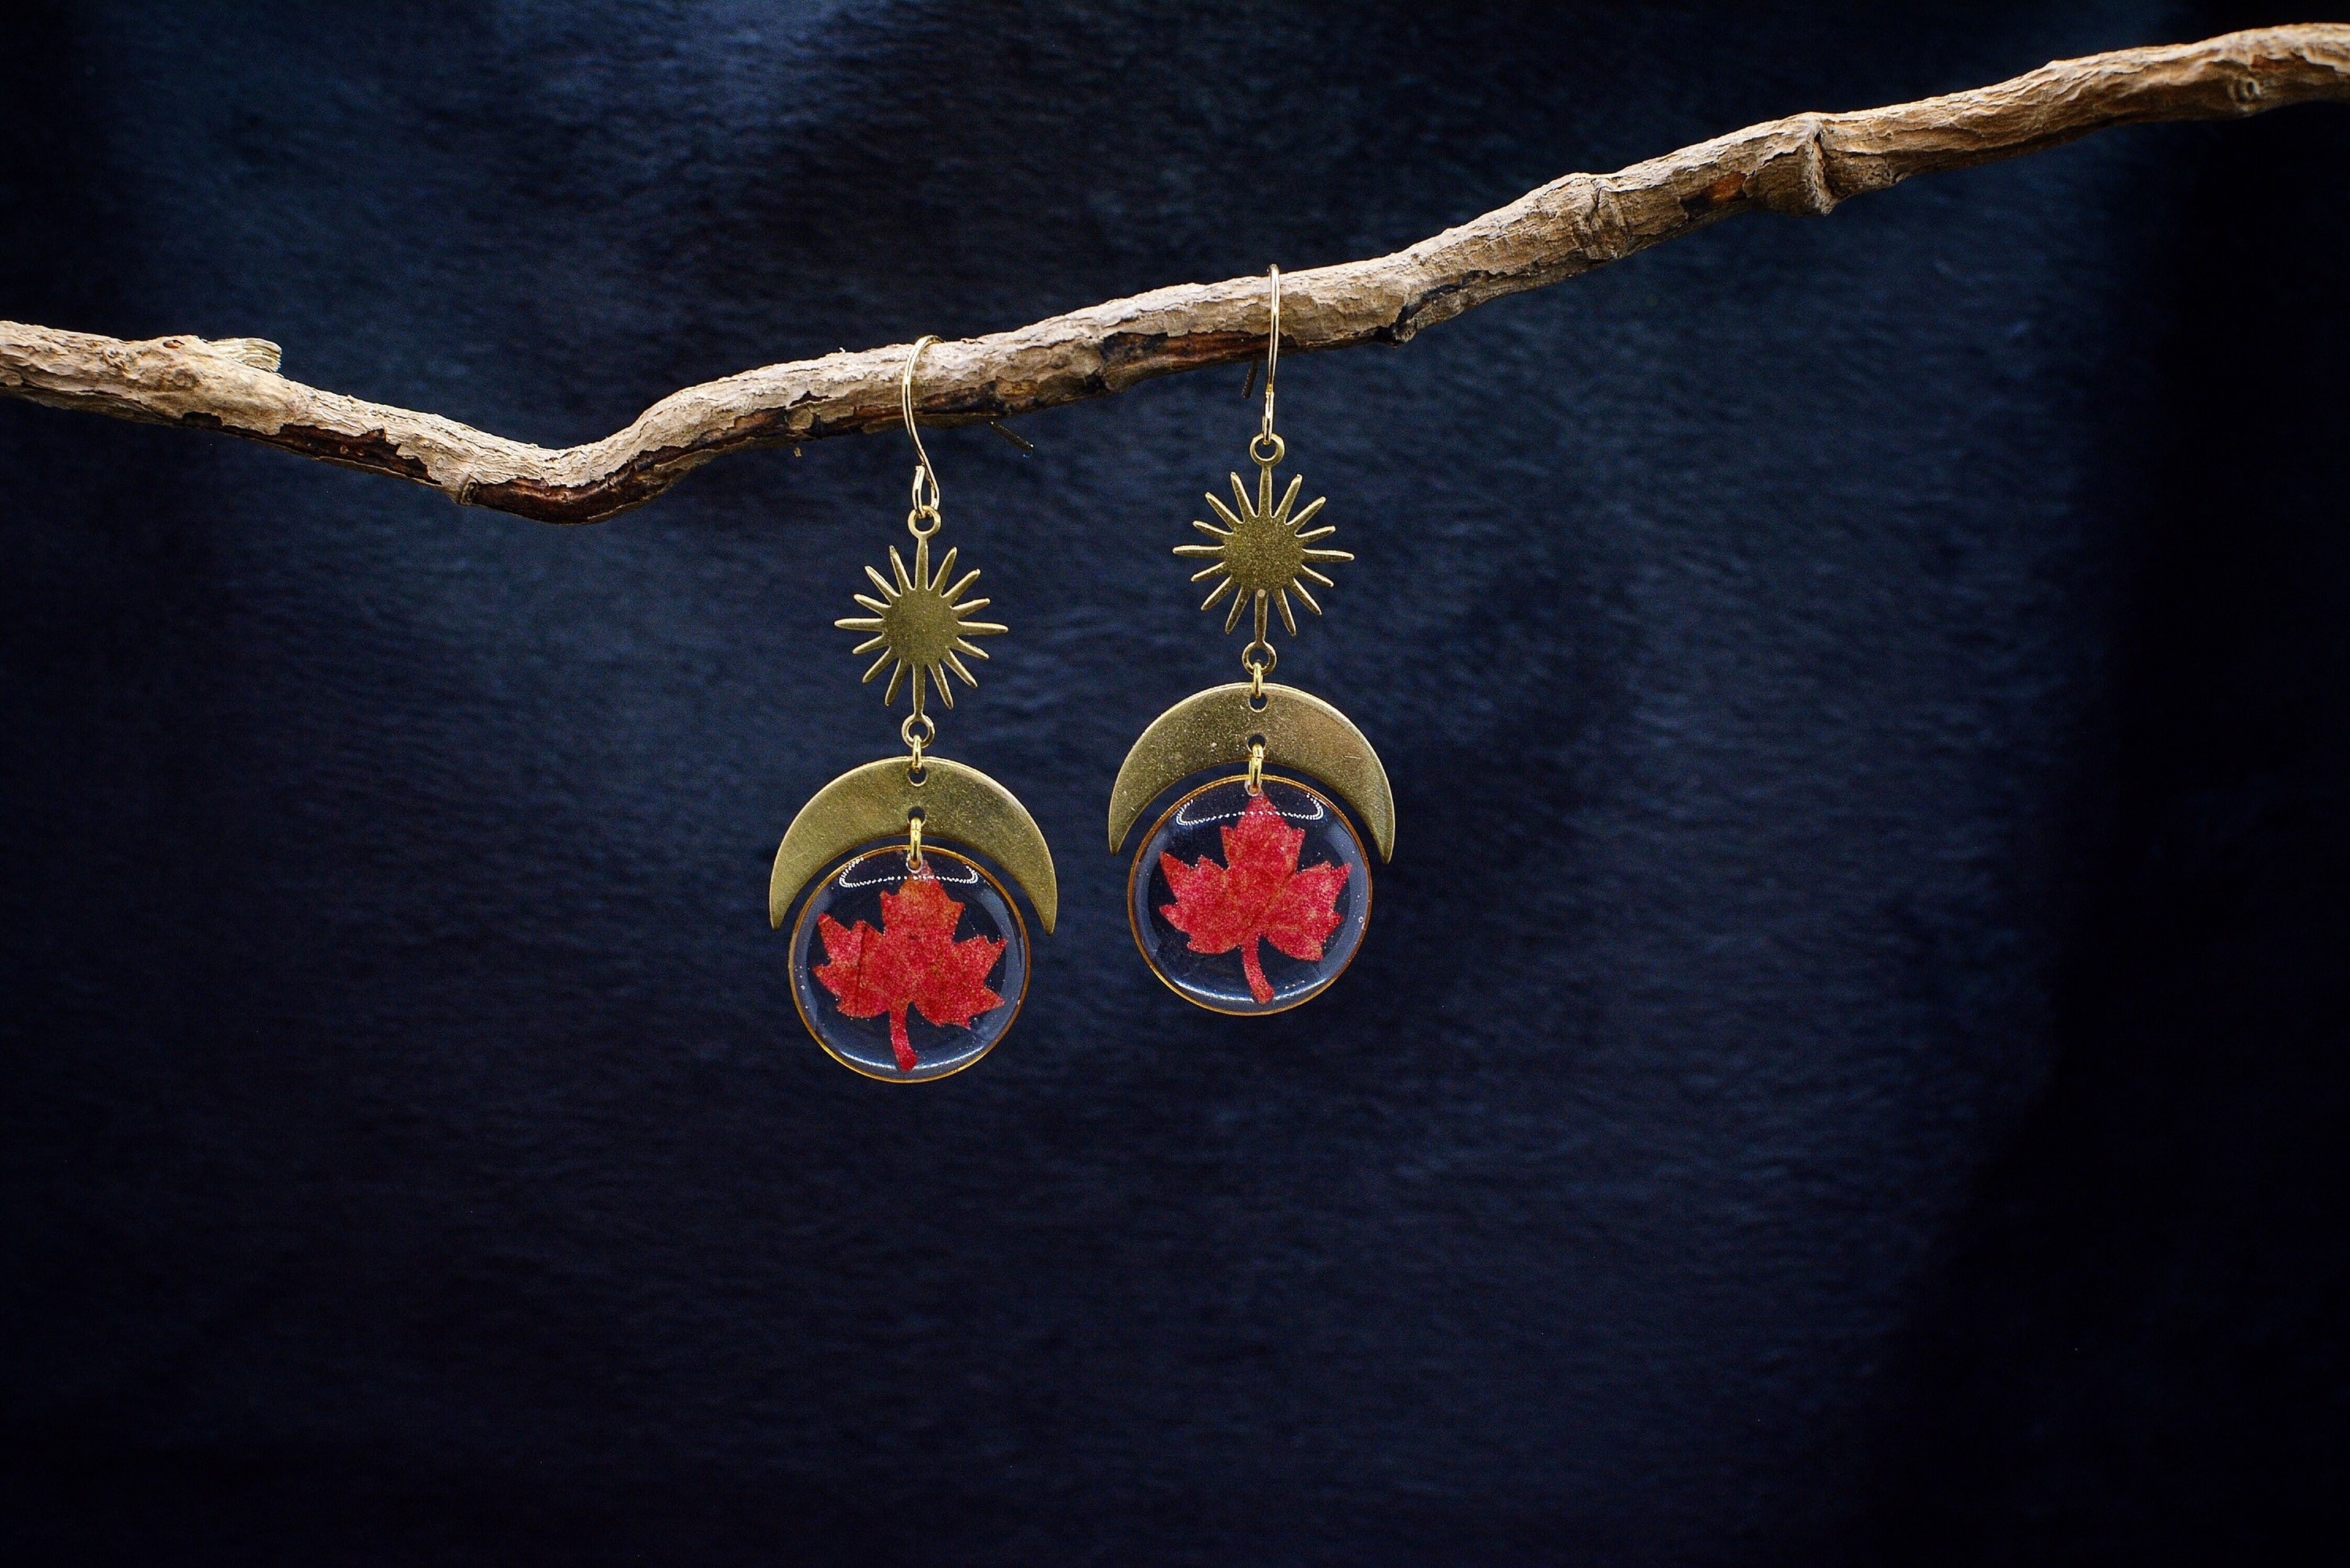 Real Leaf Earrings/Maple Jewelry/Celestial Jewelry/Fall Gift/Botanical Jewelry/Moon Earrings